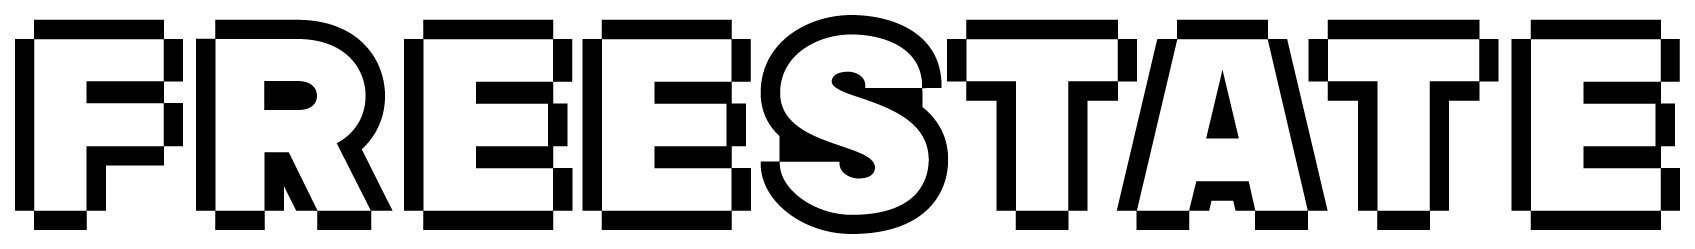 FreeState—Logotype—Black-1-.jpg